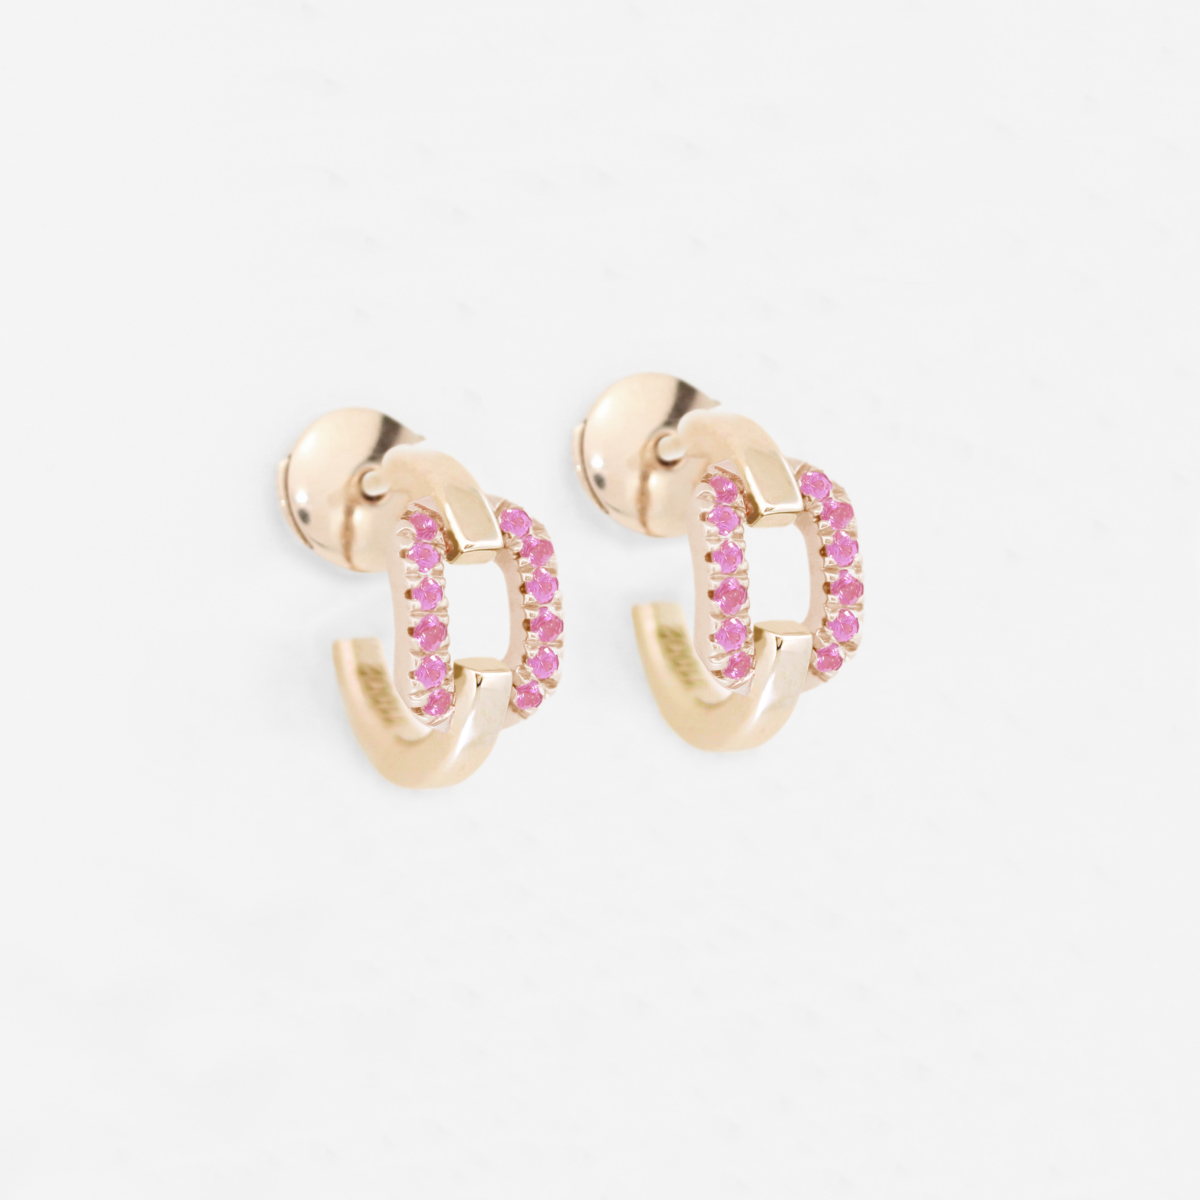 Paire de boucles d'oreilles en forme de maillon en or rose 18 carats serti de saphirs roses.